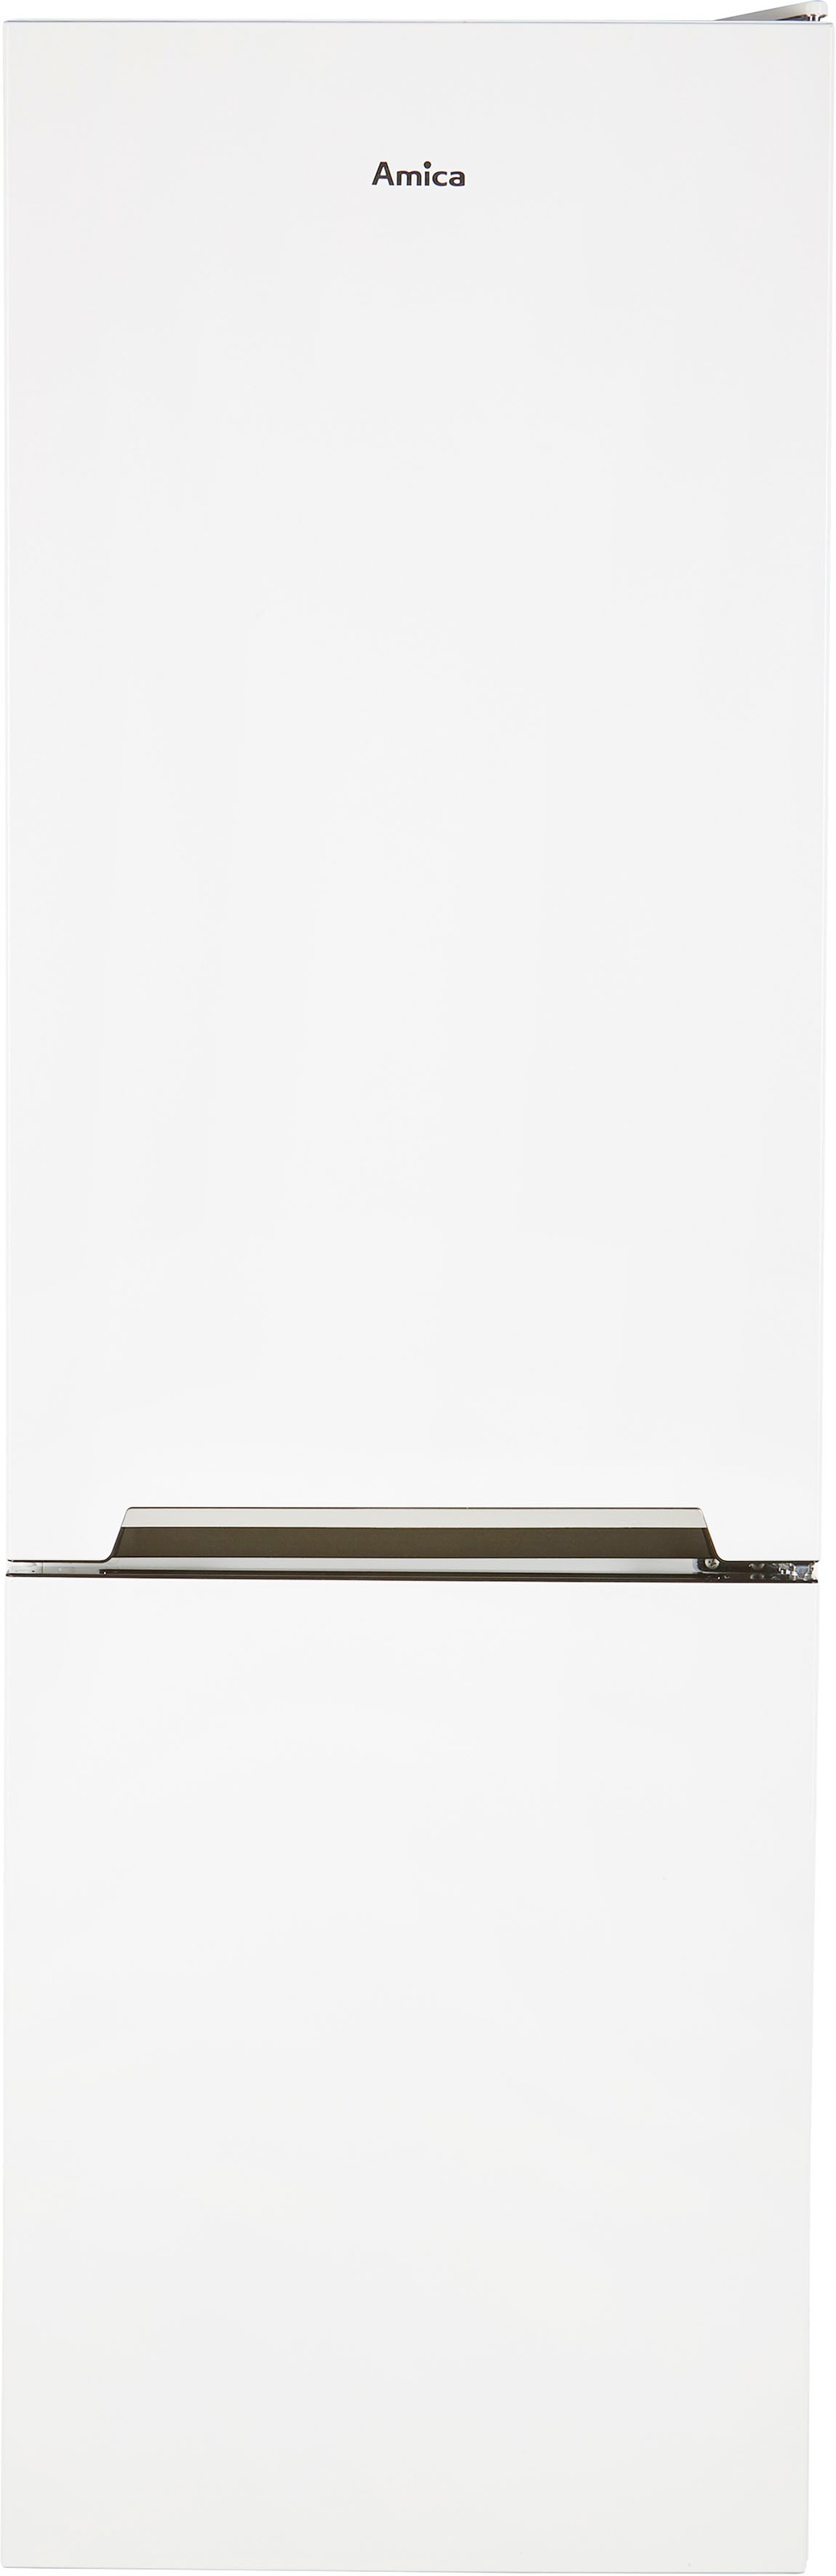 Amica Kühl-/Gefrierkombination, KGCL 387 115 E, 170 cm hoch, 54 cm breit  auf Raten kaufen